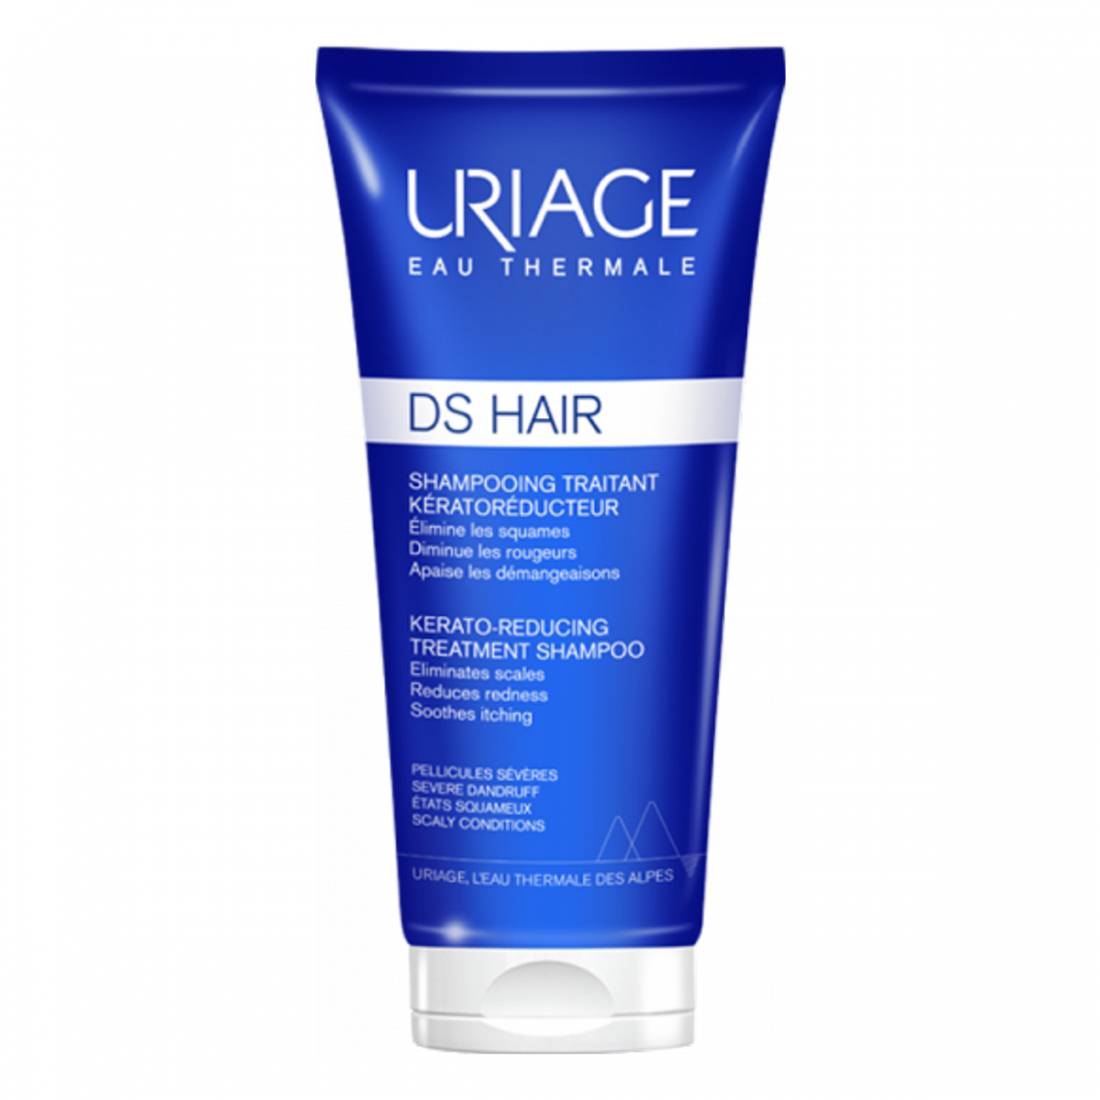 DS Hair Shampoing Traitant Kératoréducteur - 150 ml